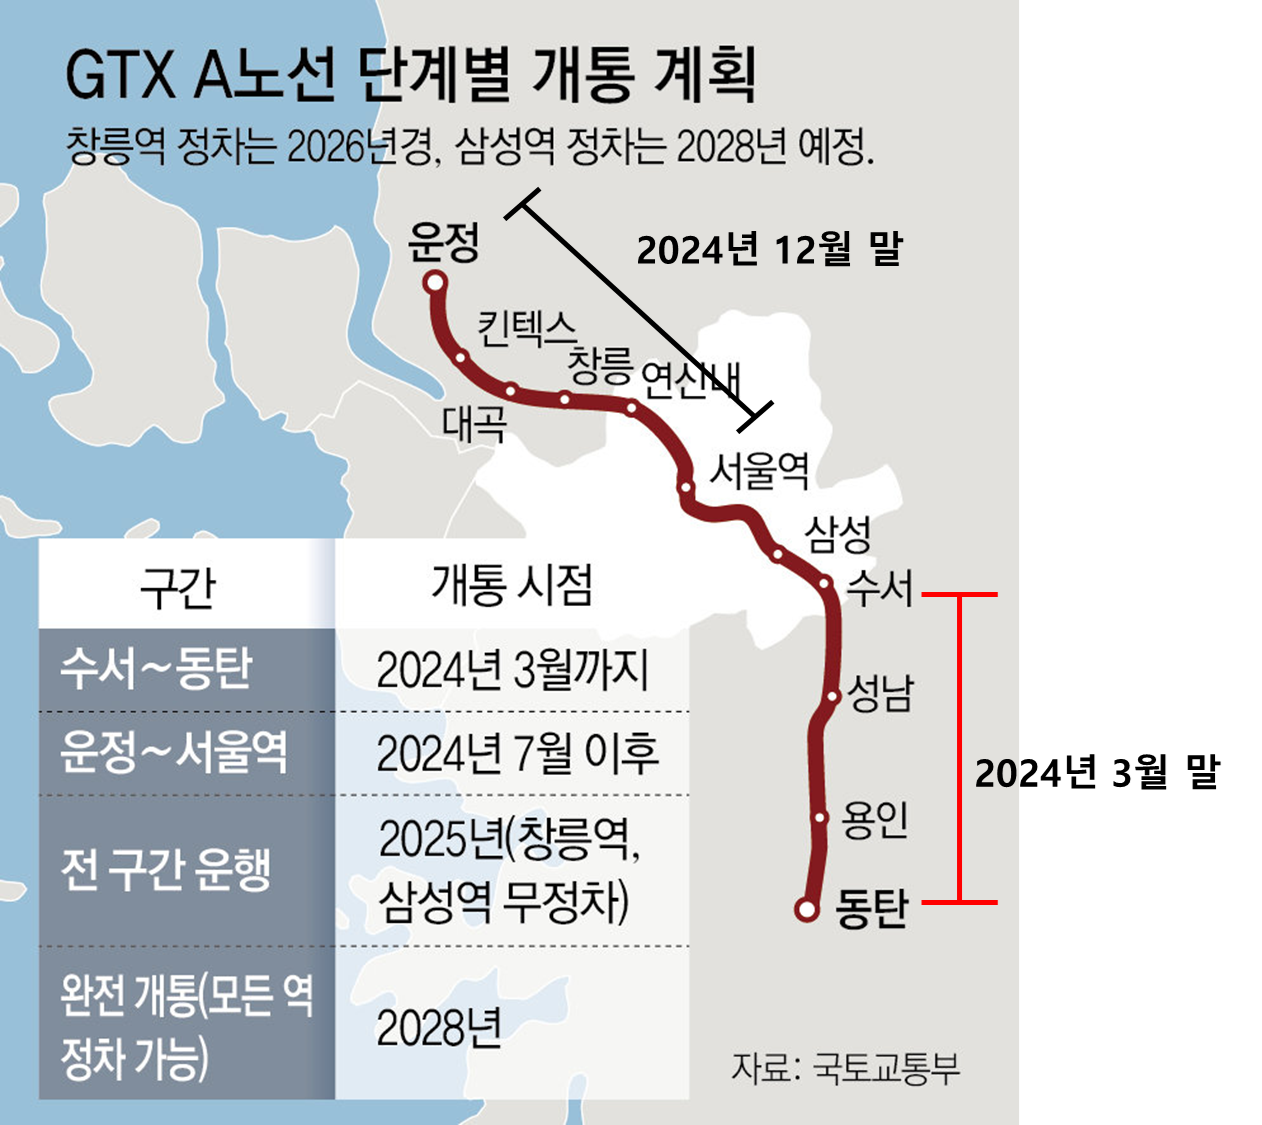 GTX-A 노선 구간별 개통 시점